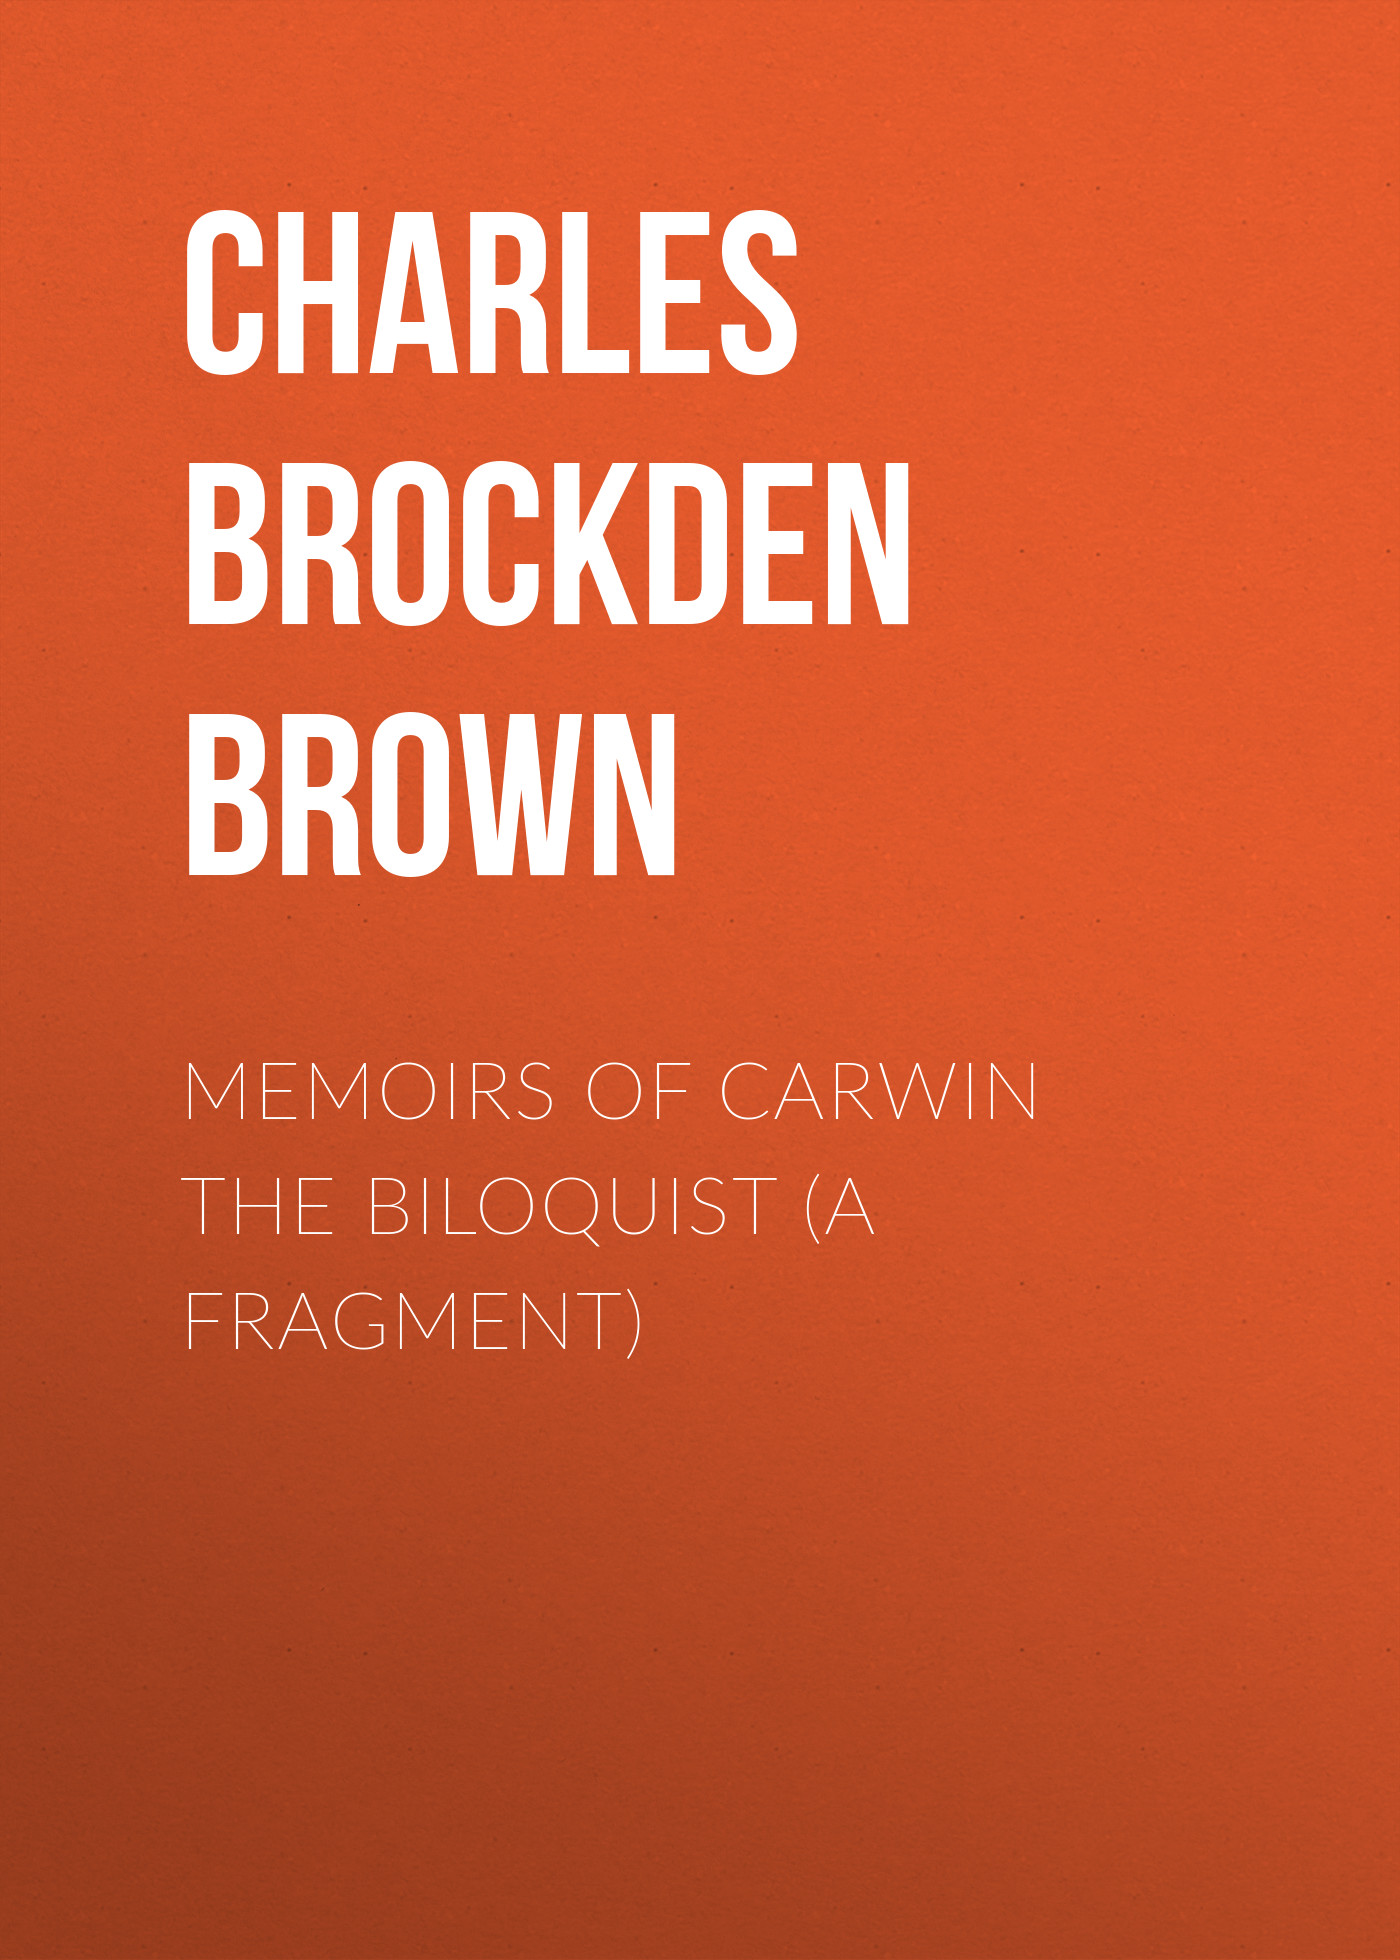 Книга Memoirs of Carwin the Biloquist (A Fragment) из серии , созданная Charles Brown, может относится к жанру Зарубежная классика, Зарубежная старинная литература. Стоимость электронной книги Memoirs of Carwin the Biloquist (A Fragment) с идентификатором 36092693 составляет 0 руб.